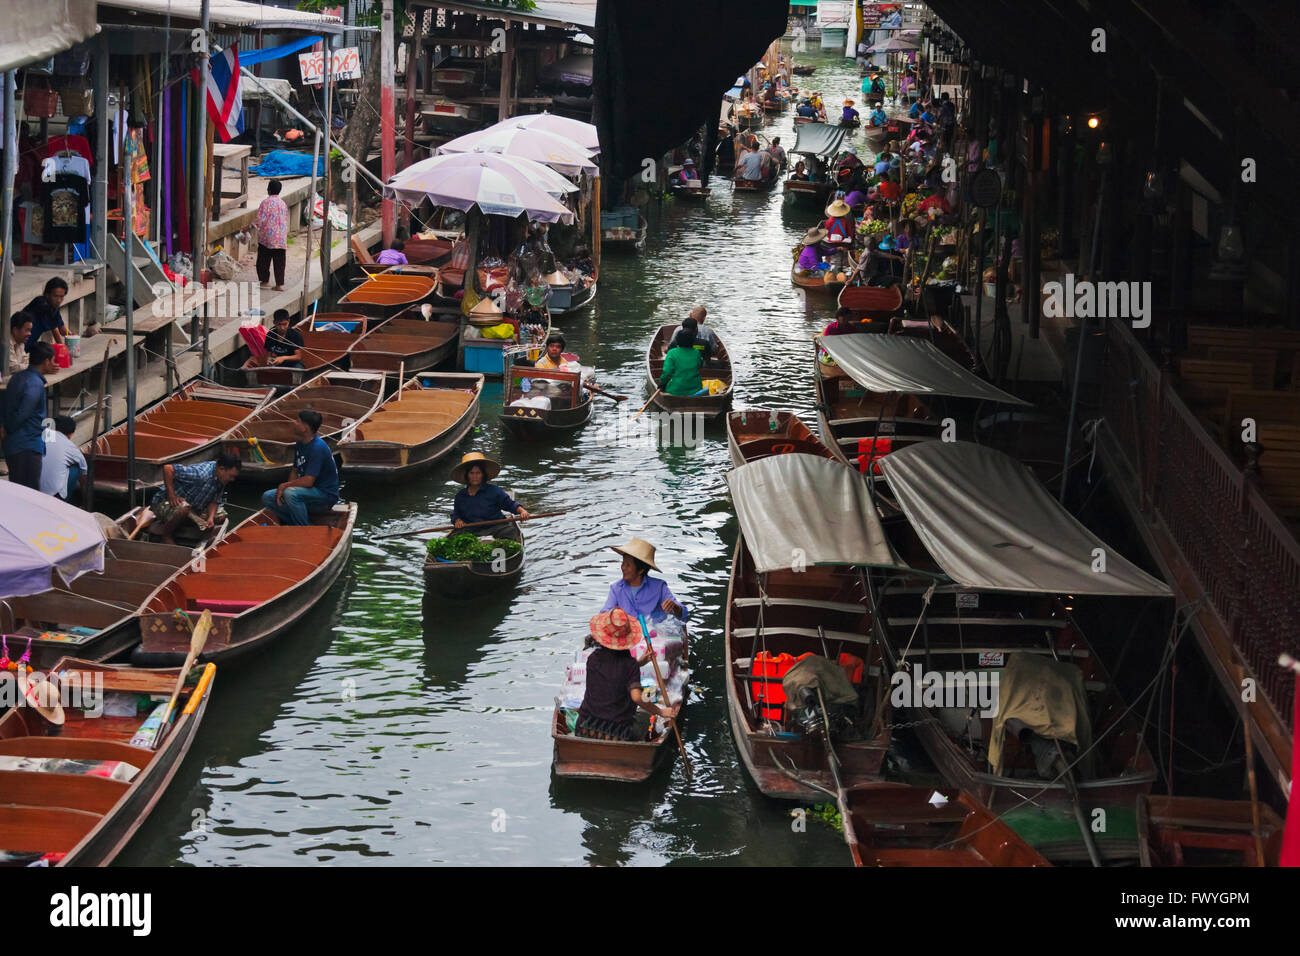 Floating market, Bangkok, Thailand Stock Photo